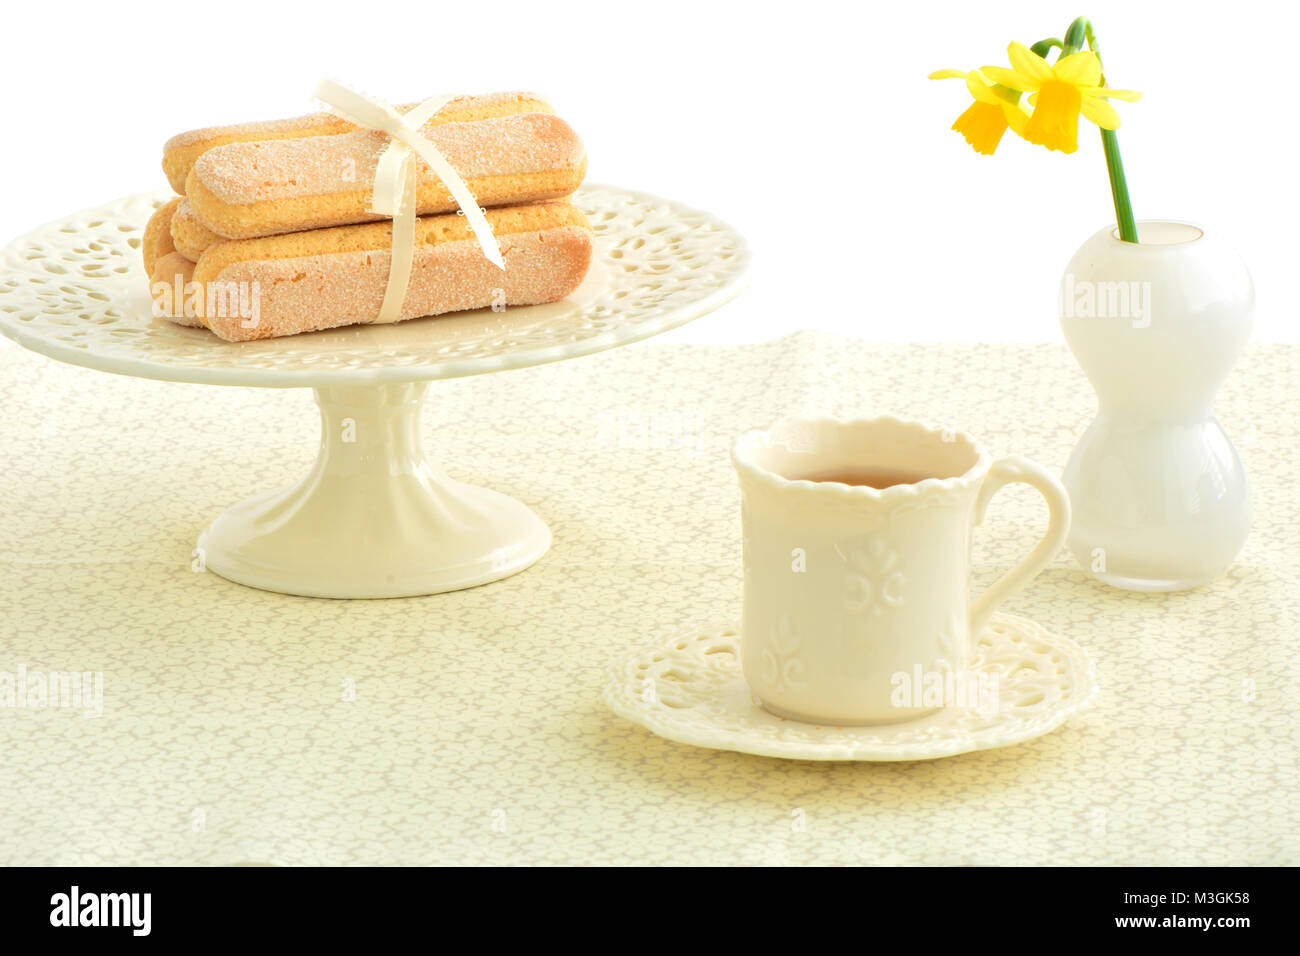 Ladyfinger délicate des gâteaux et du thé sur la jolie vaisselle en format horizontal Banque D'Images